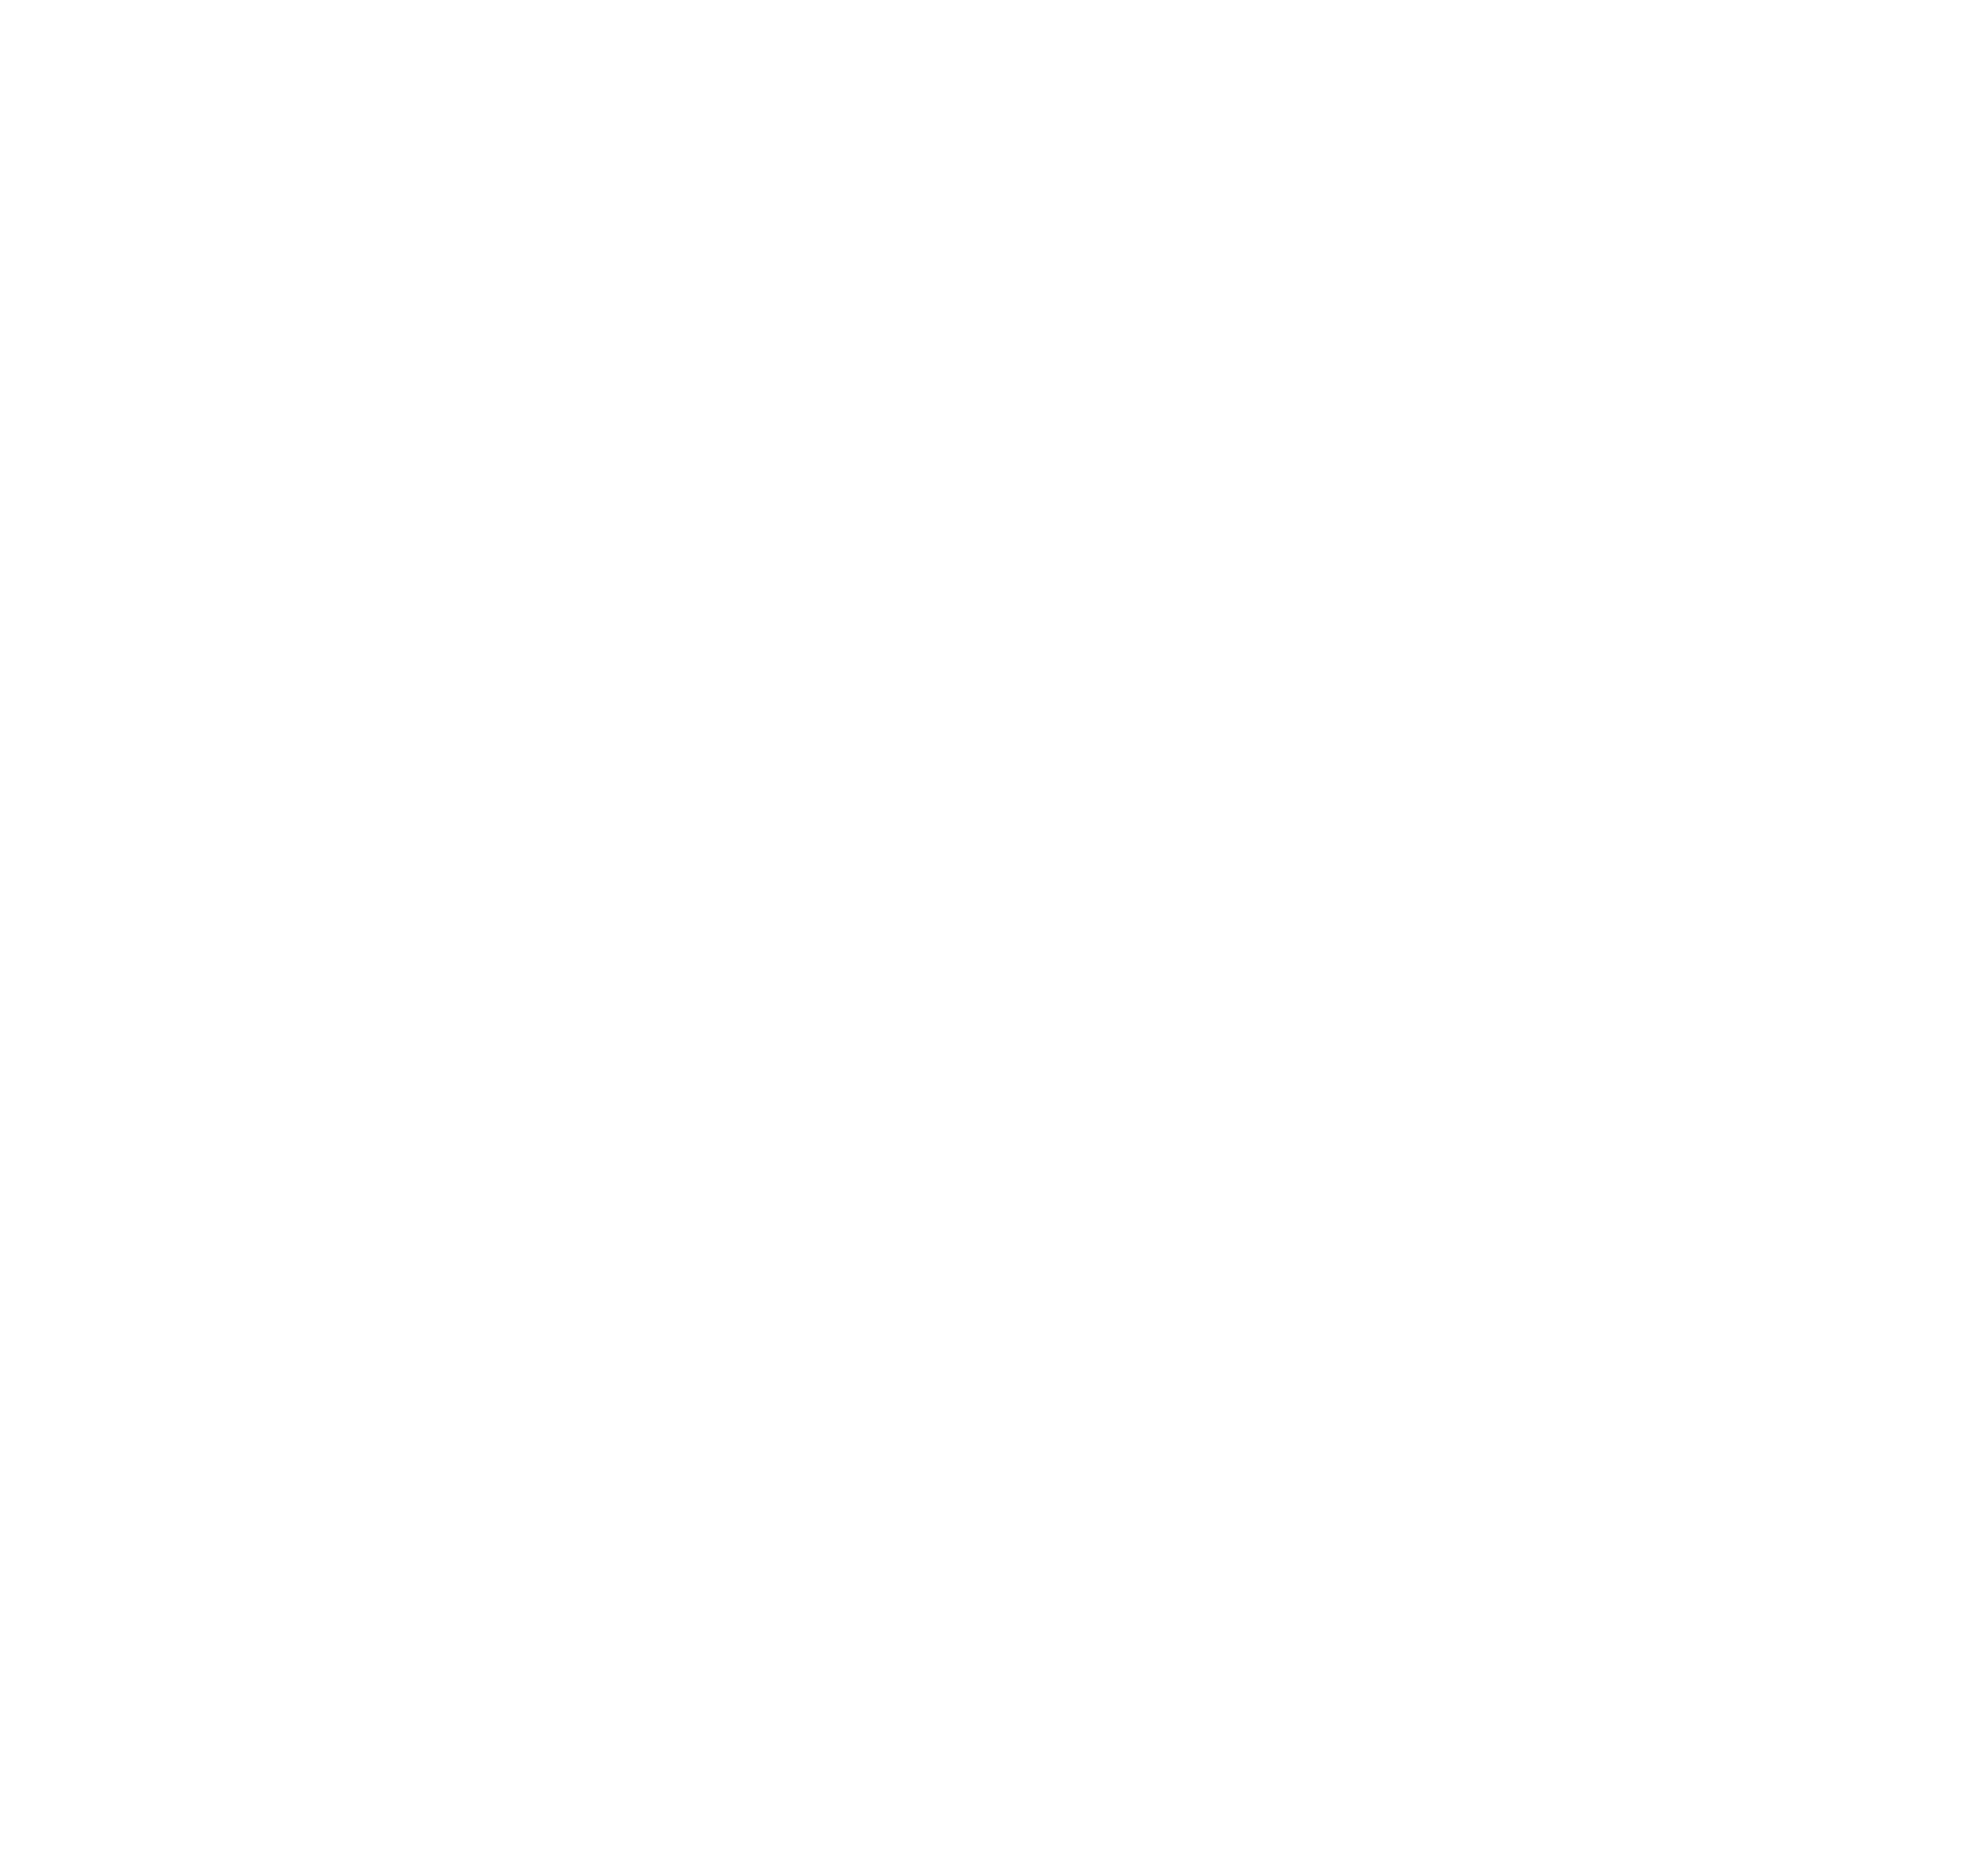 Barepack.png